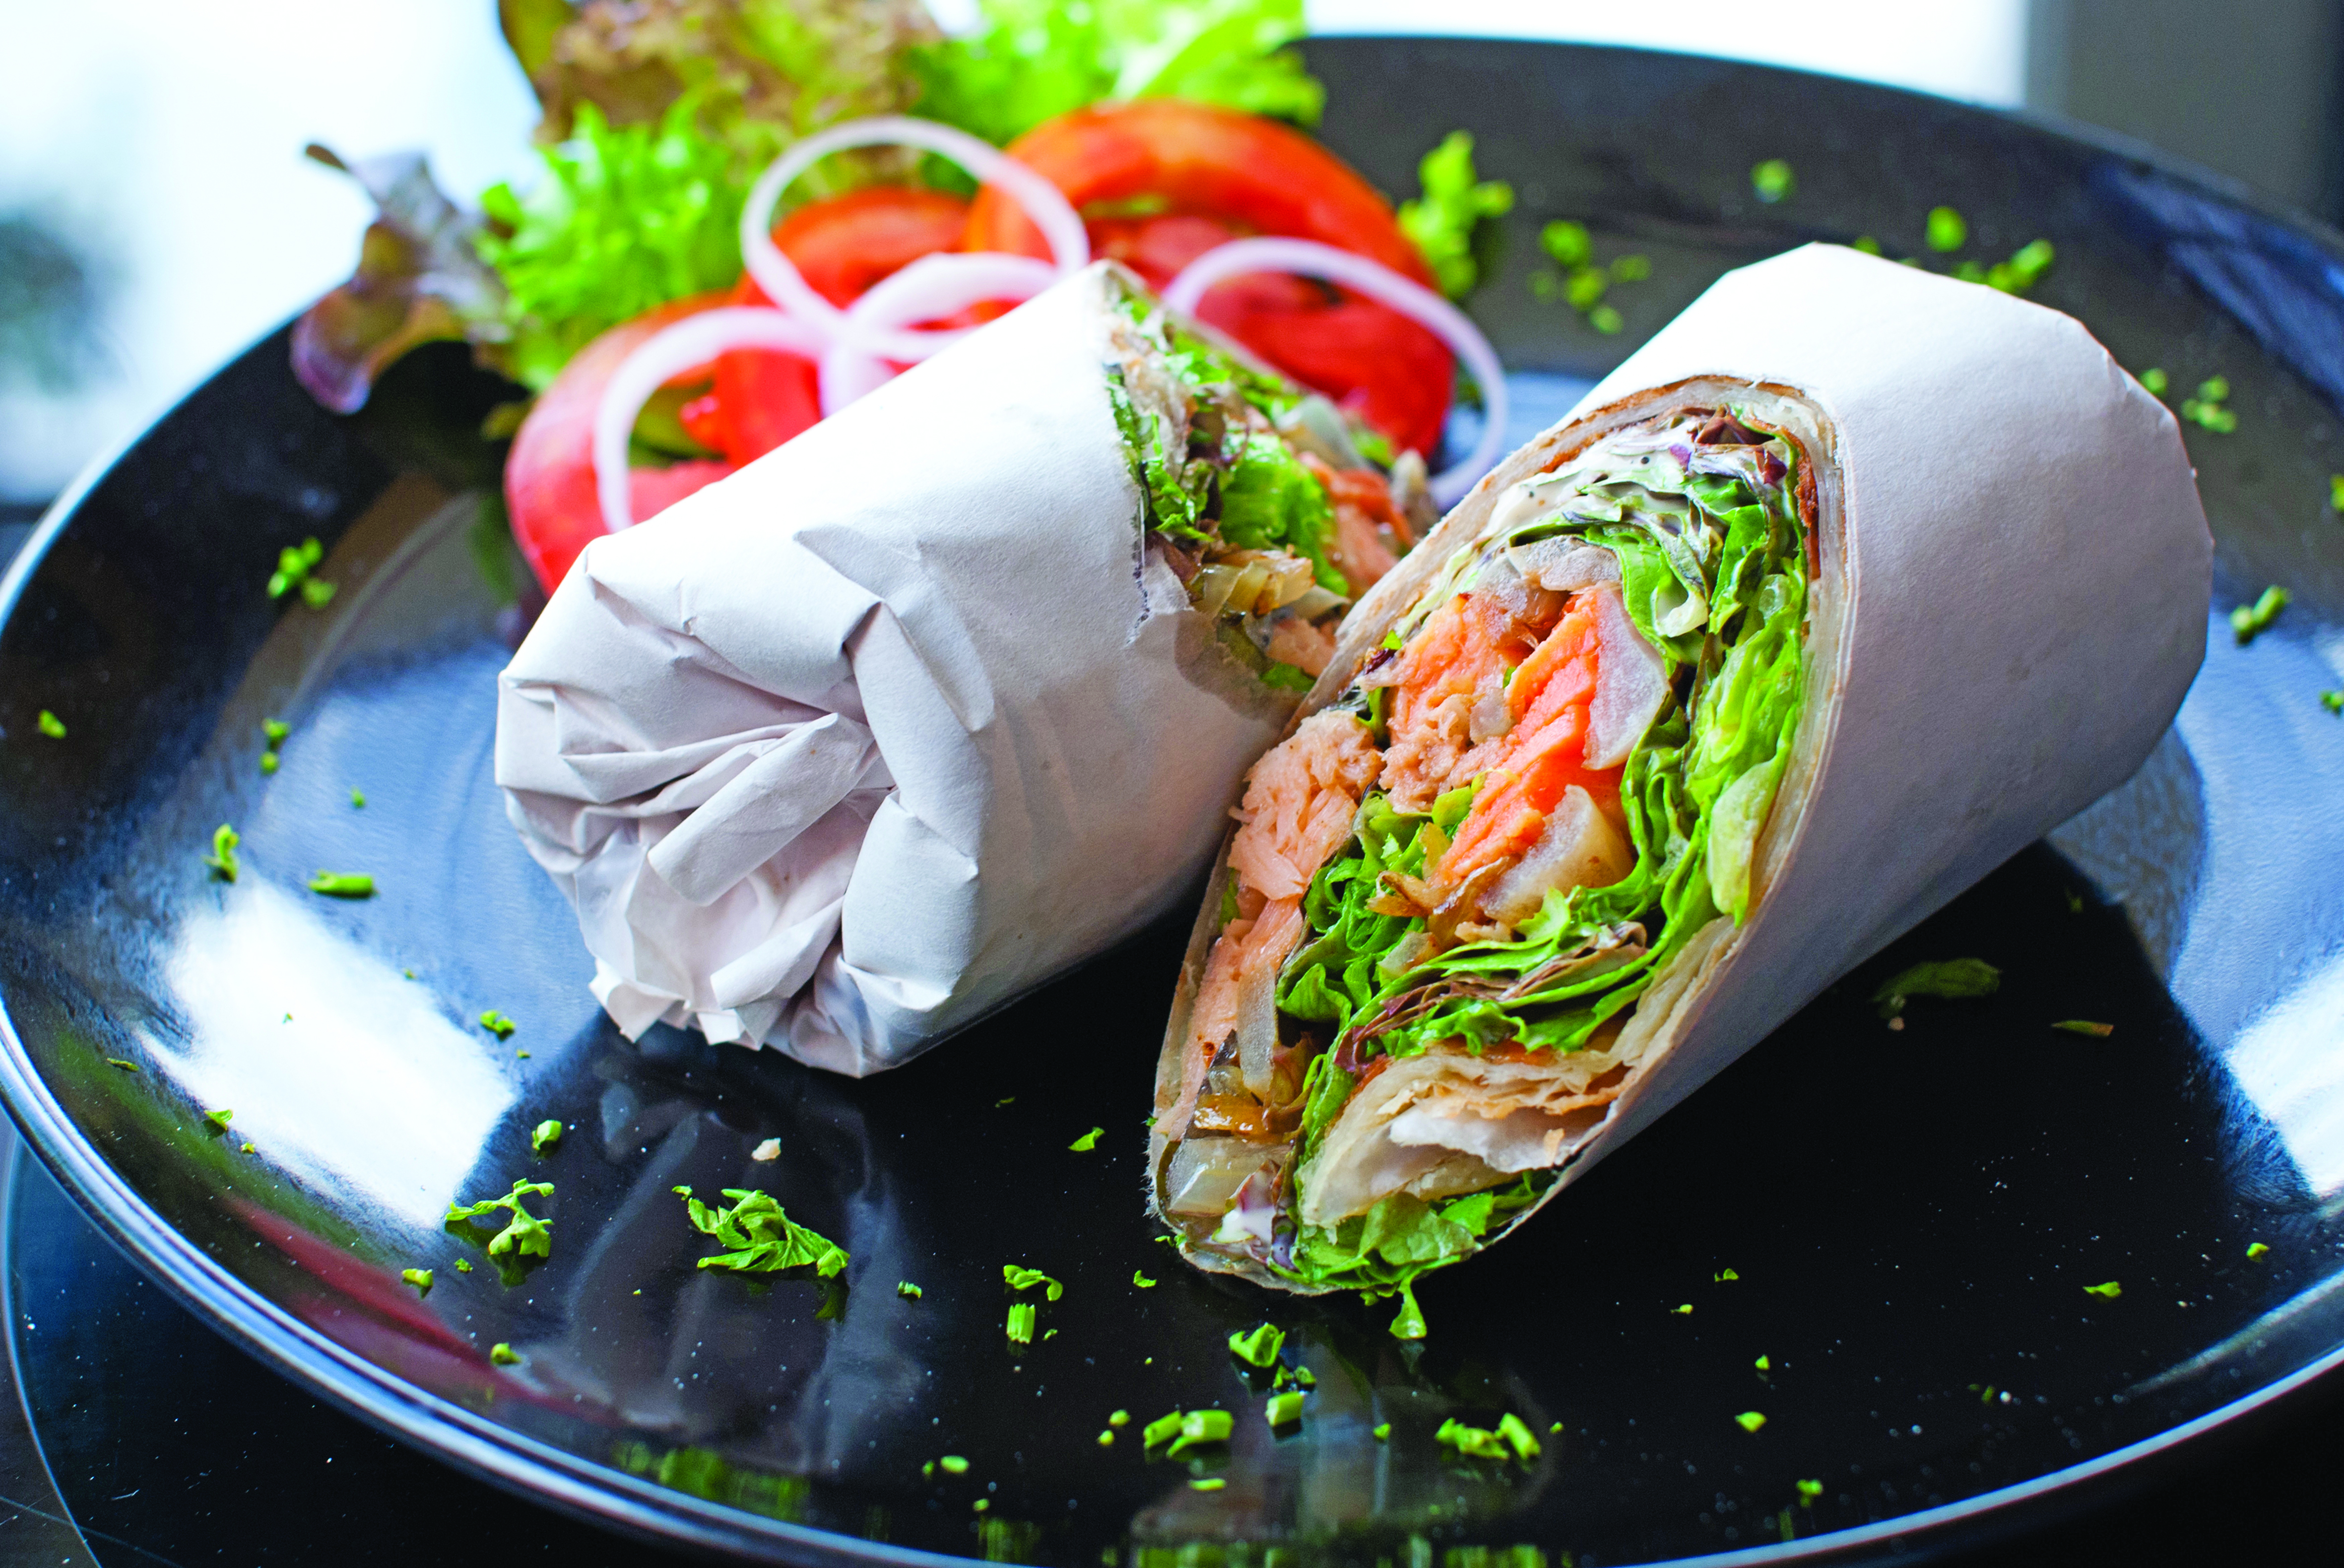 Oman dining: Four ways to eat wraps